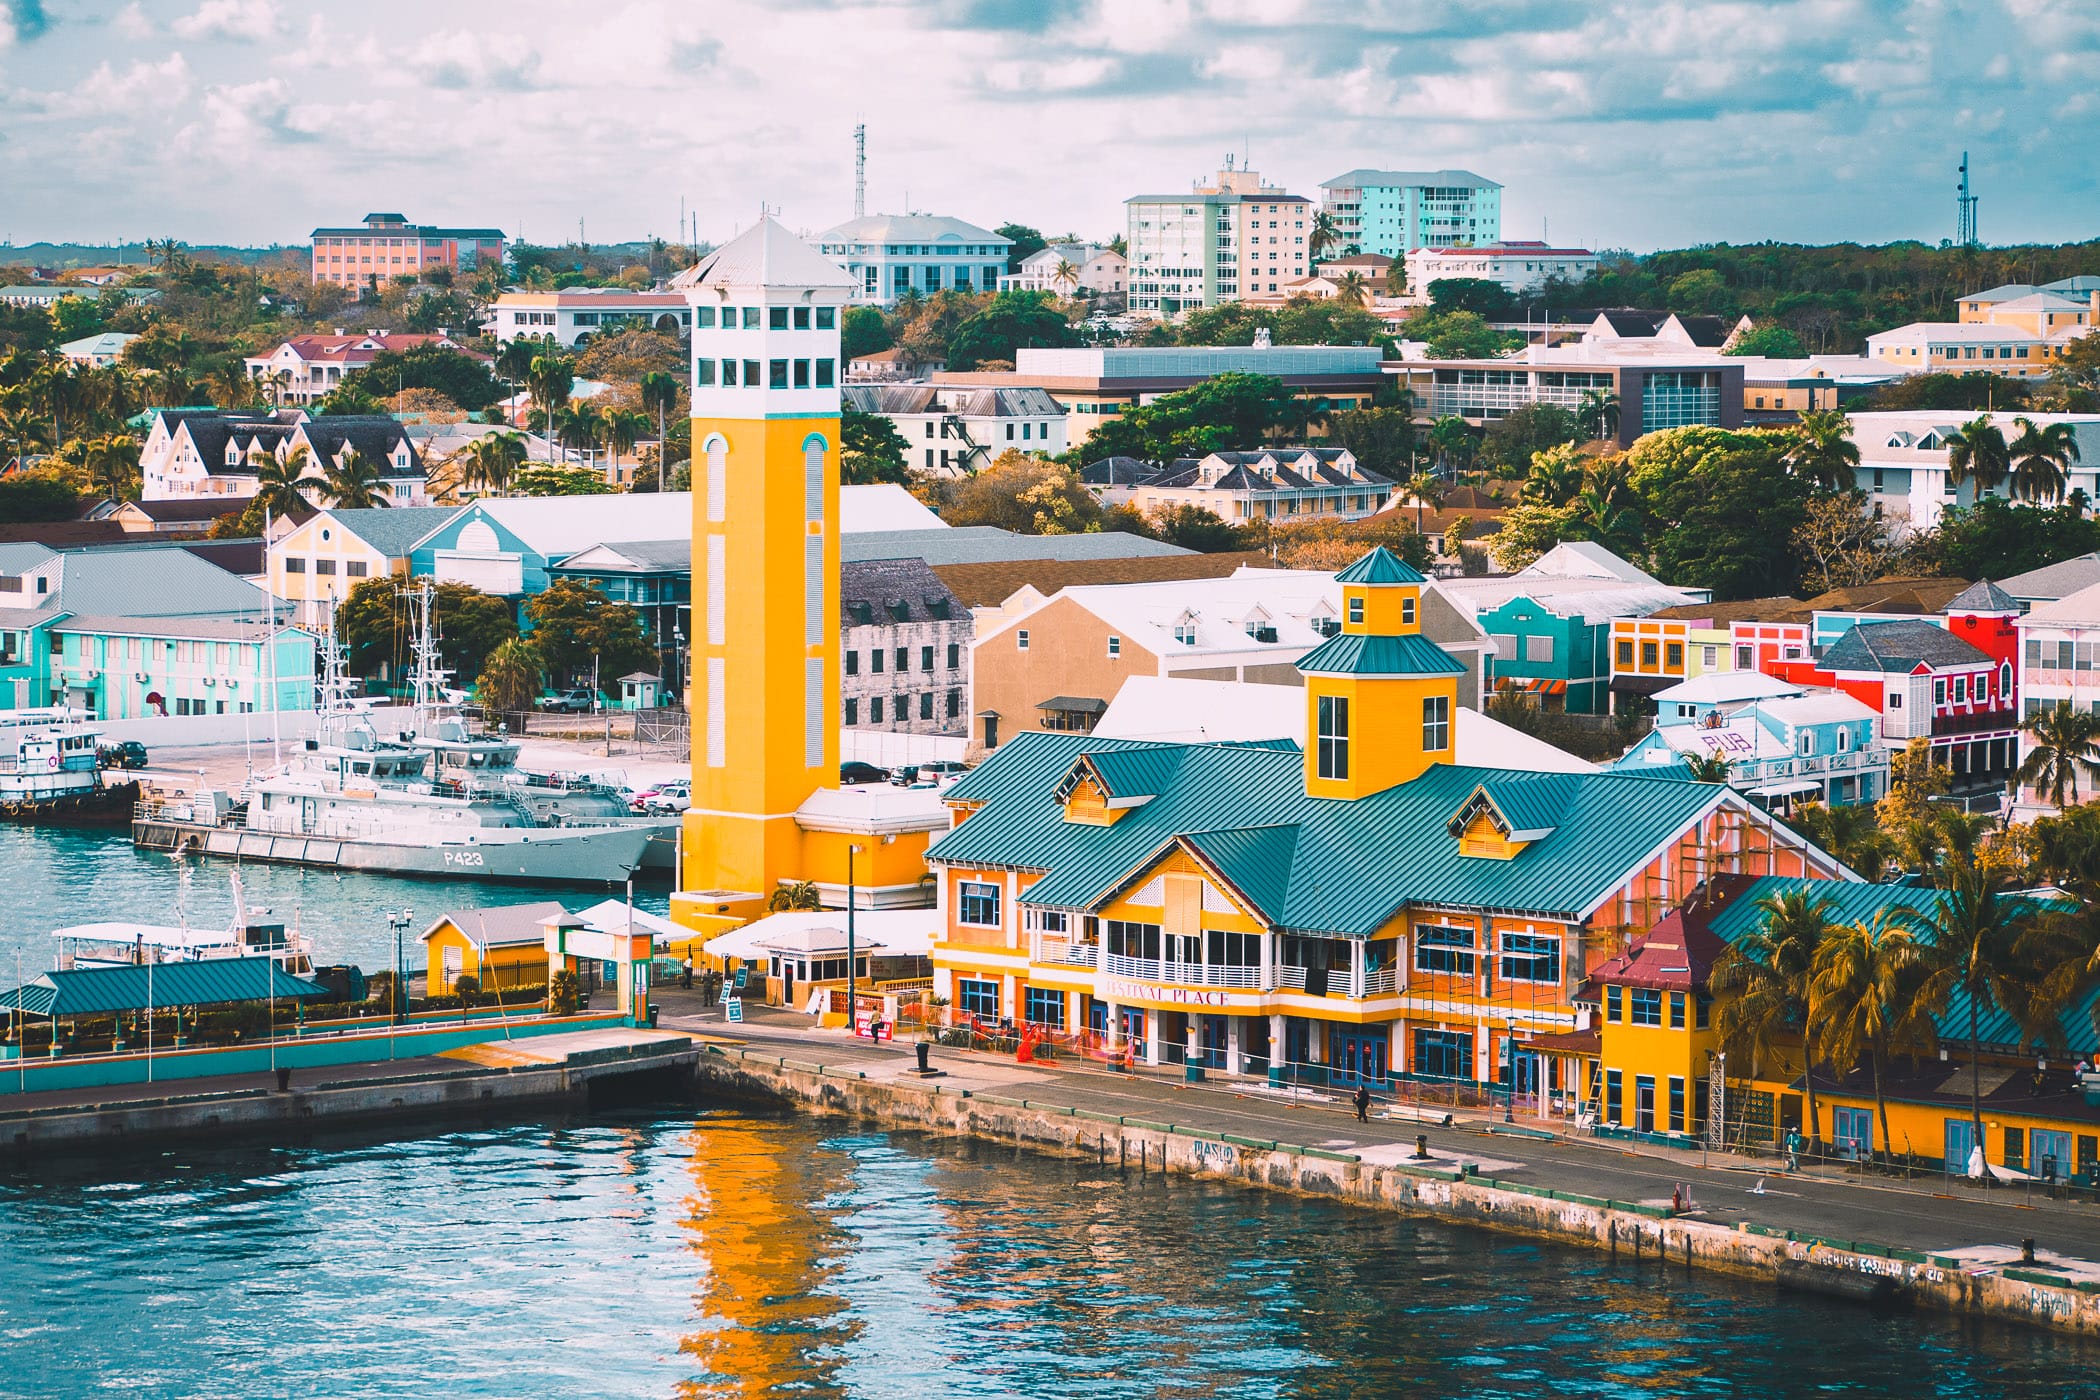 The colorful, vivid environs of Nassau, Bahamas.